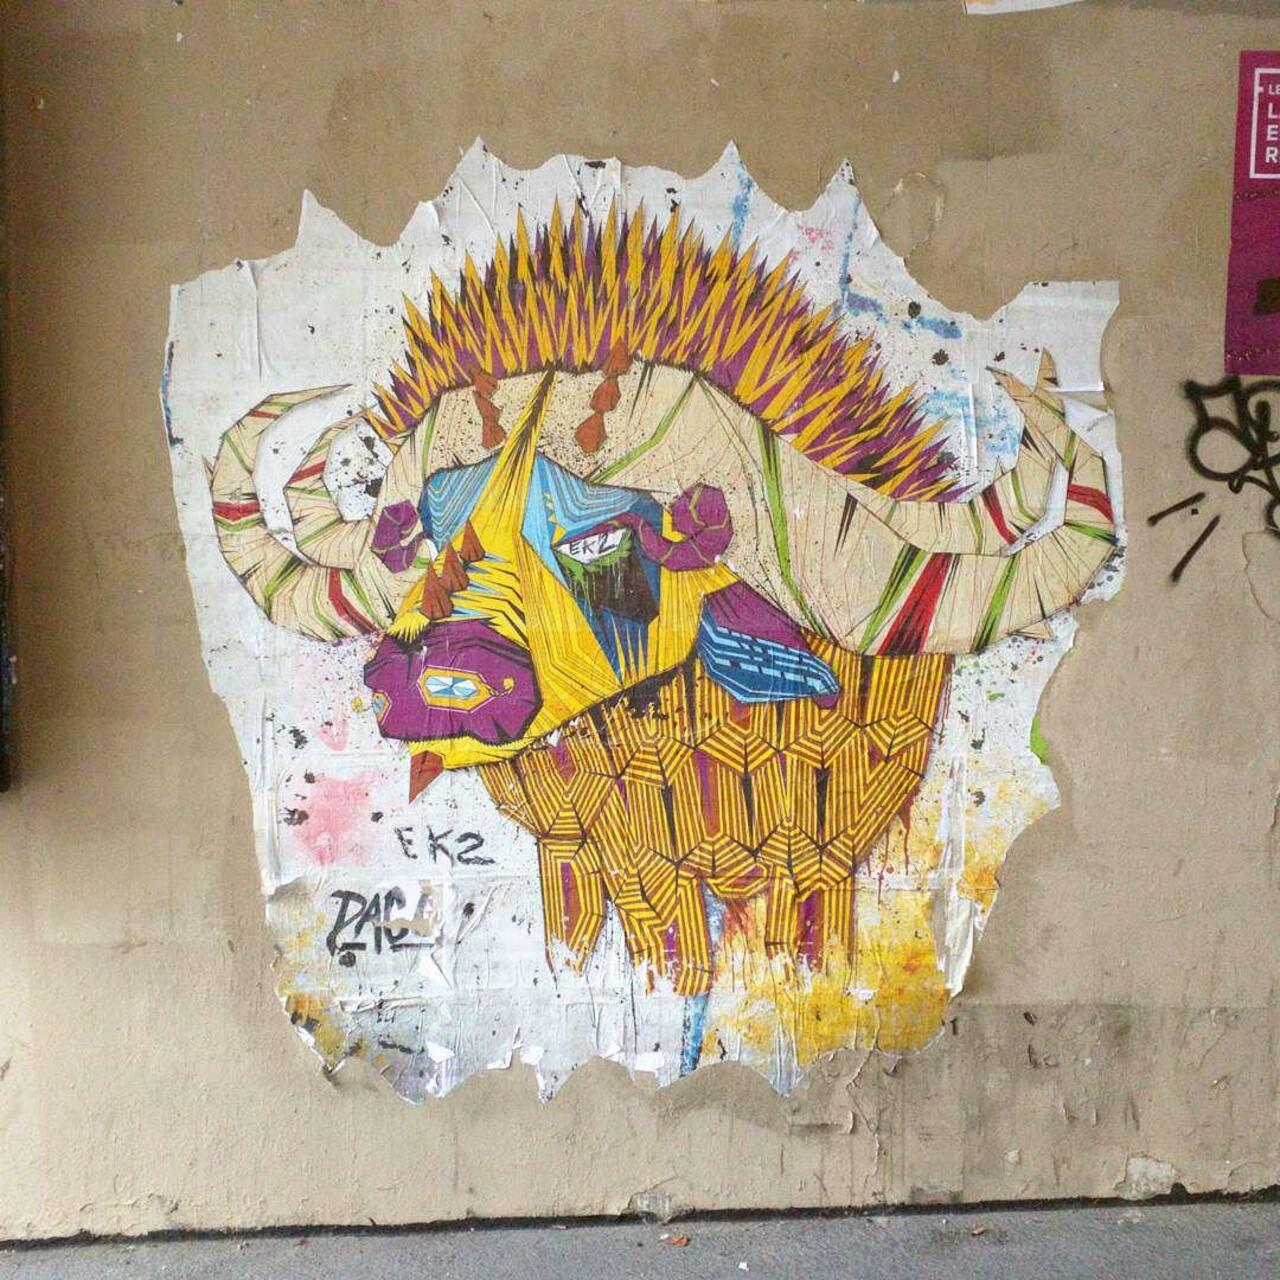 #Paris #graffiti photo by @alphaquadra http://ift.tt/1L4xMfU #StreetArt http://t.co/F97IOPemoC